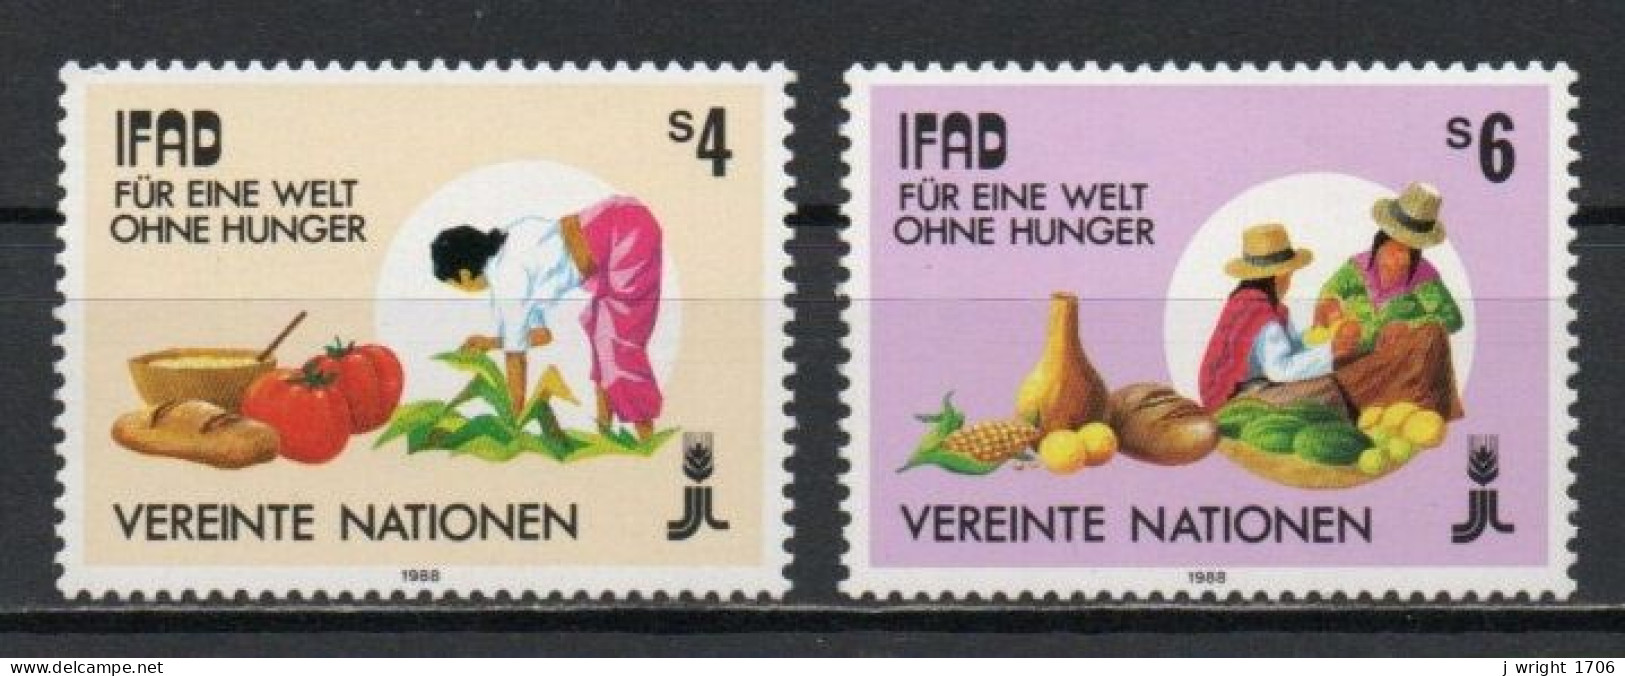 UN/Vienna, 1988, IFAD, Set, MNH - Ungebraucht